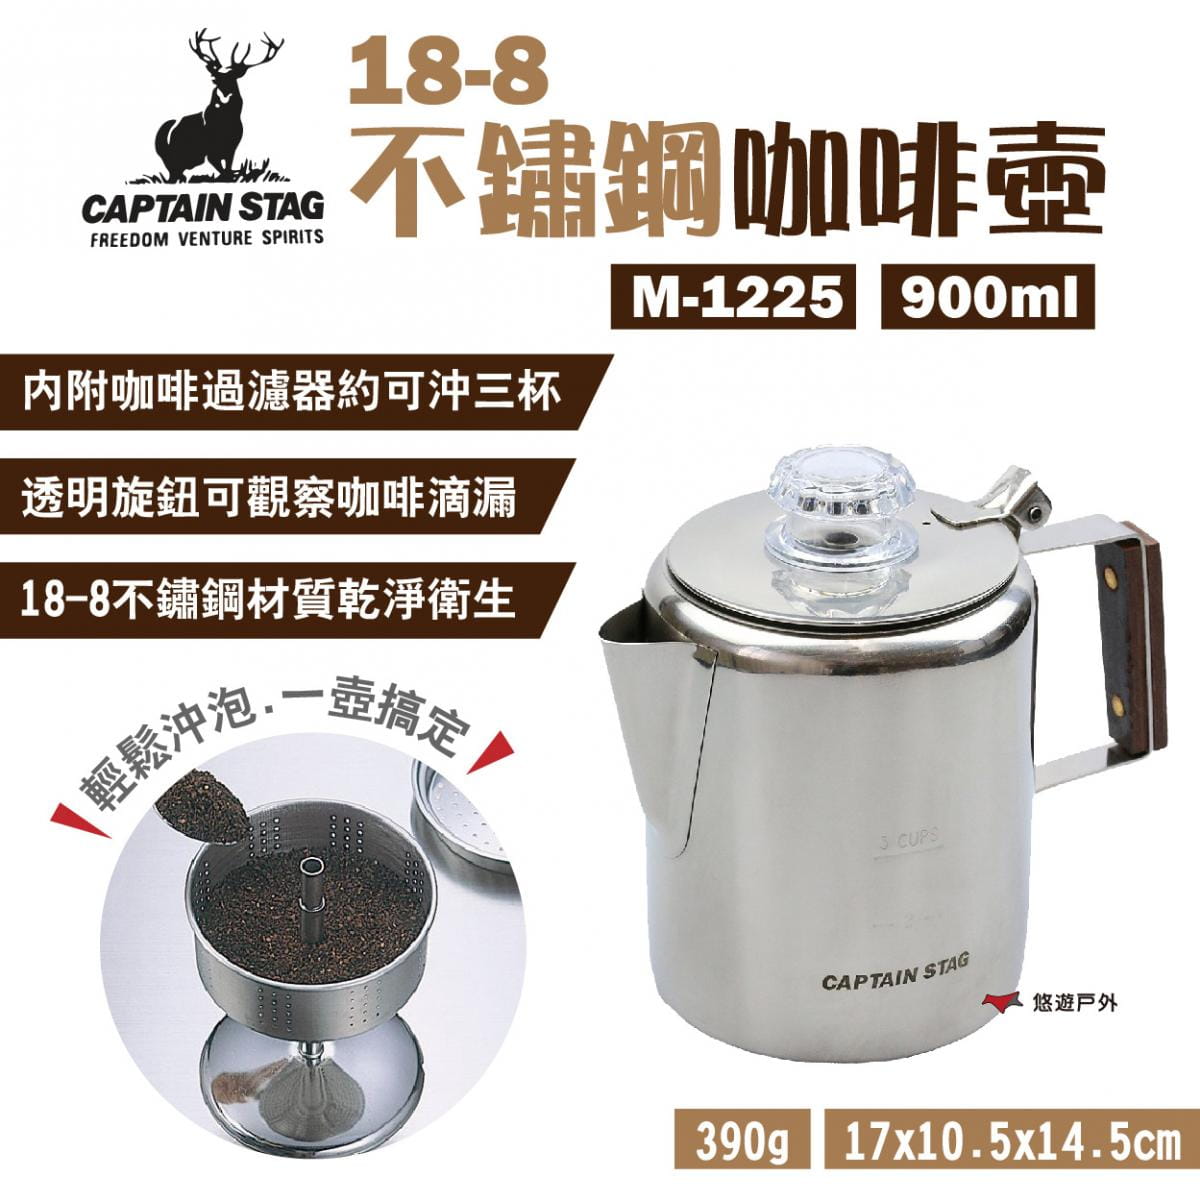 【日本鹿牌】18-8不鏽鋼咖啡壺3杯 M-1225 900ml (悠遊戶外) 0